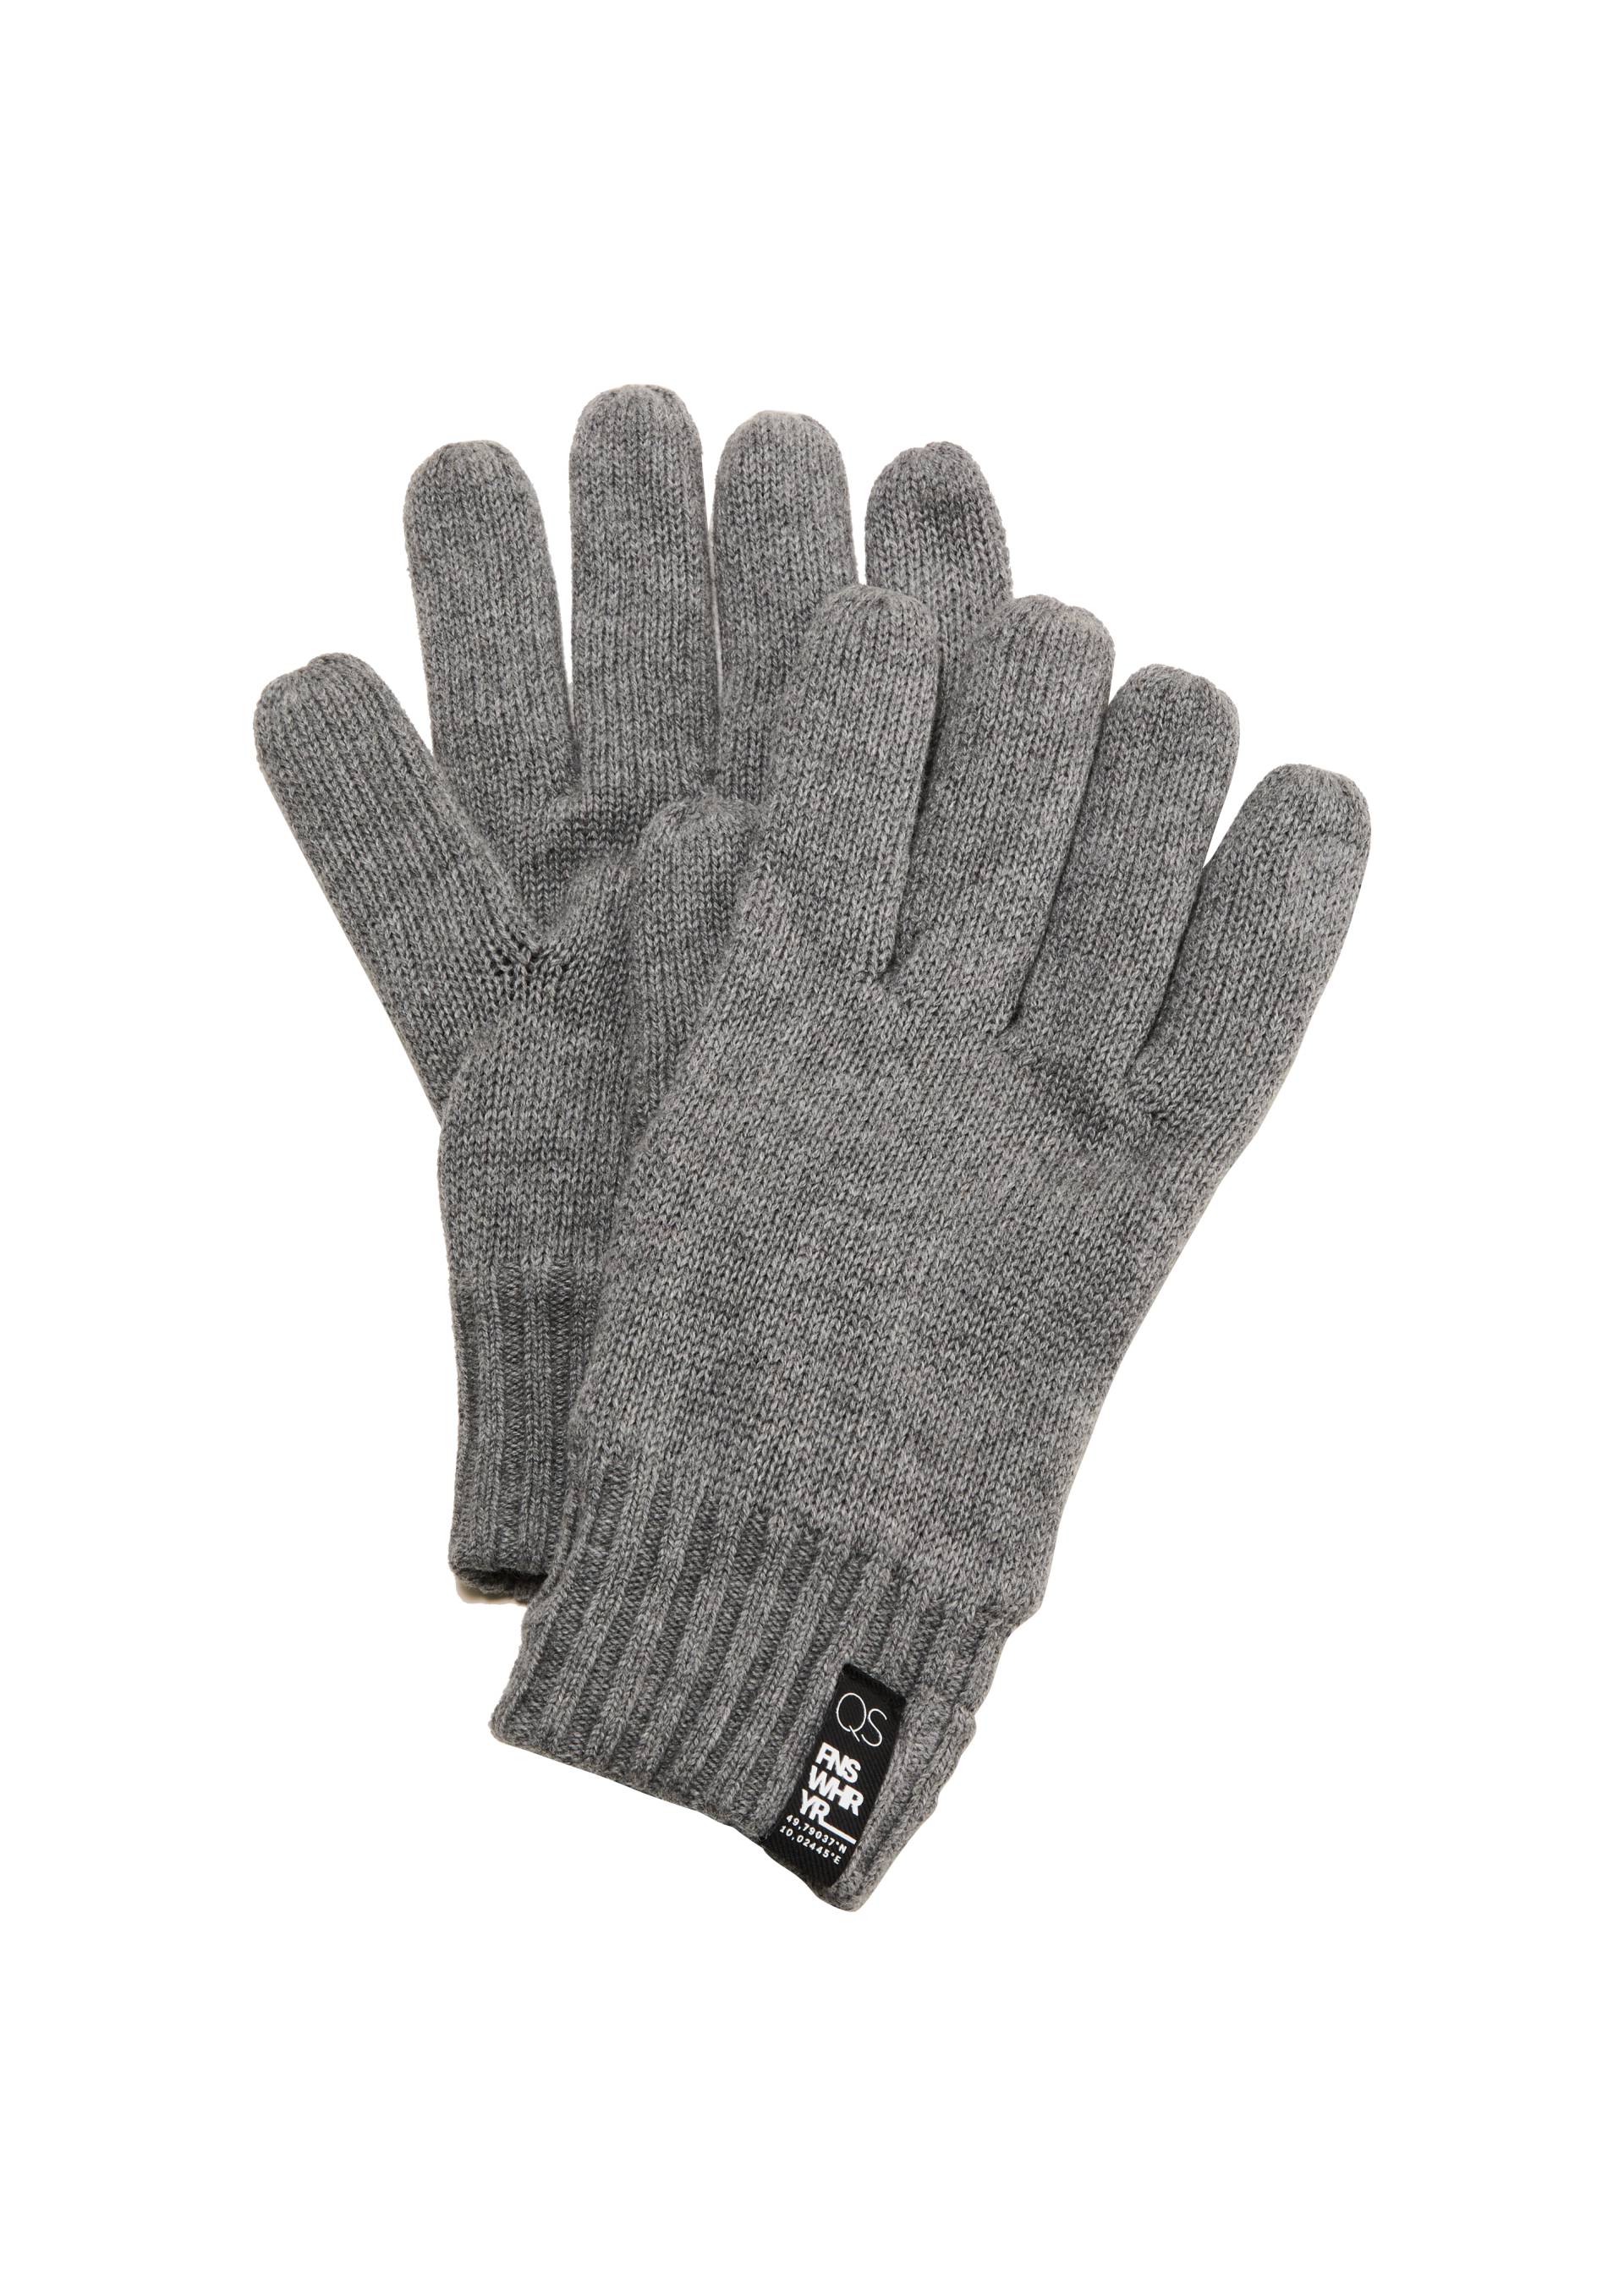 QS - Handschuhe mit Fleece-Futter, Herren, grau von QS